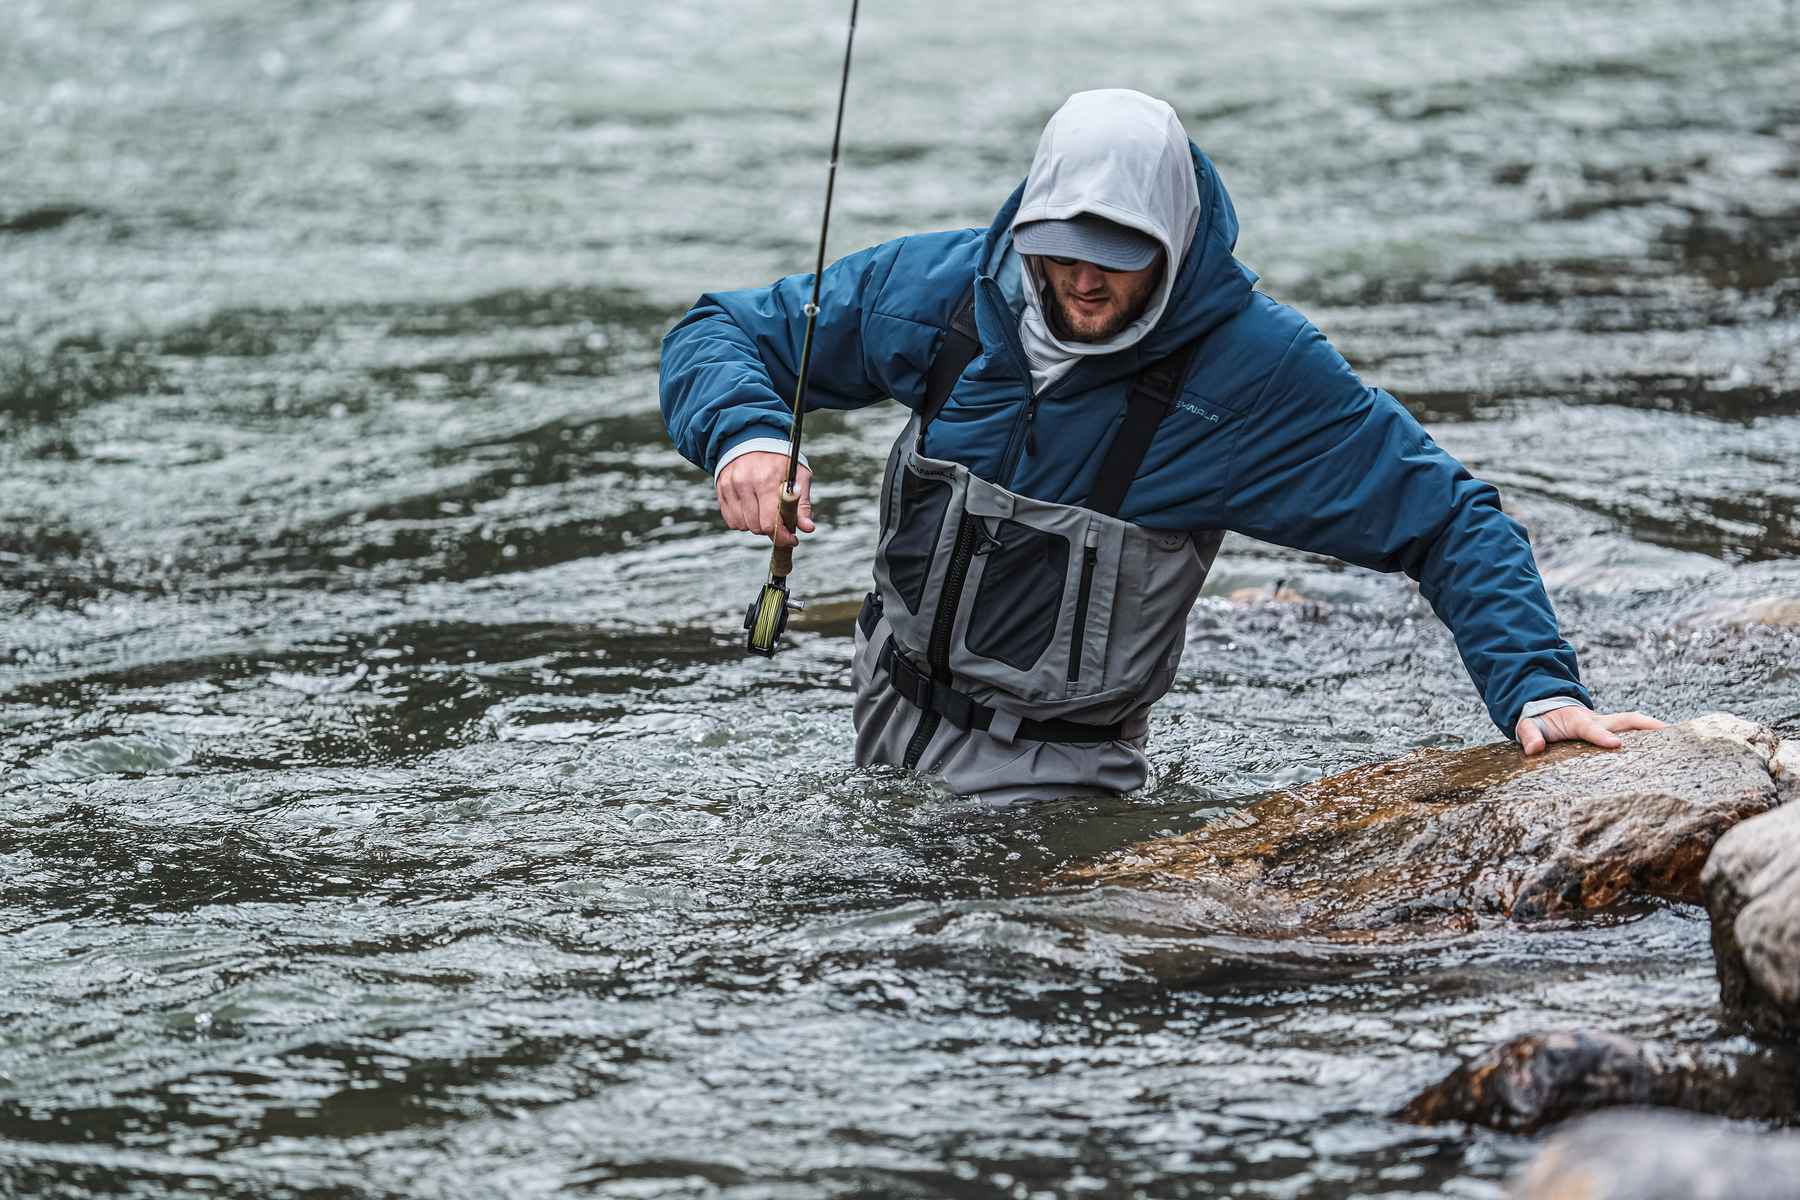 Super High Fishing Waders Half Water Pants Wear-resistant Long